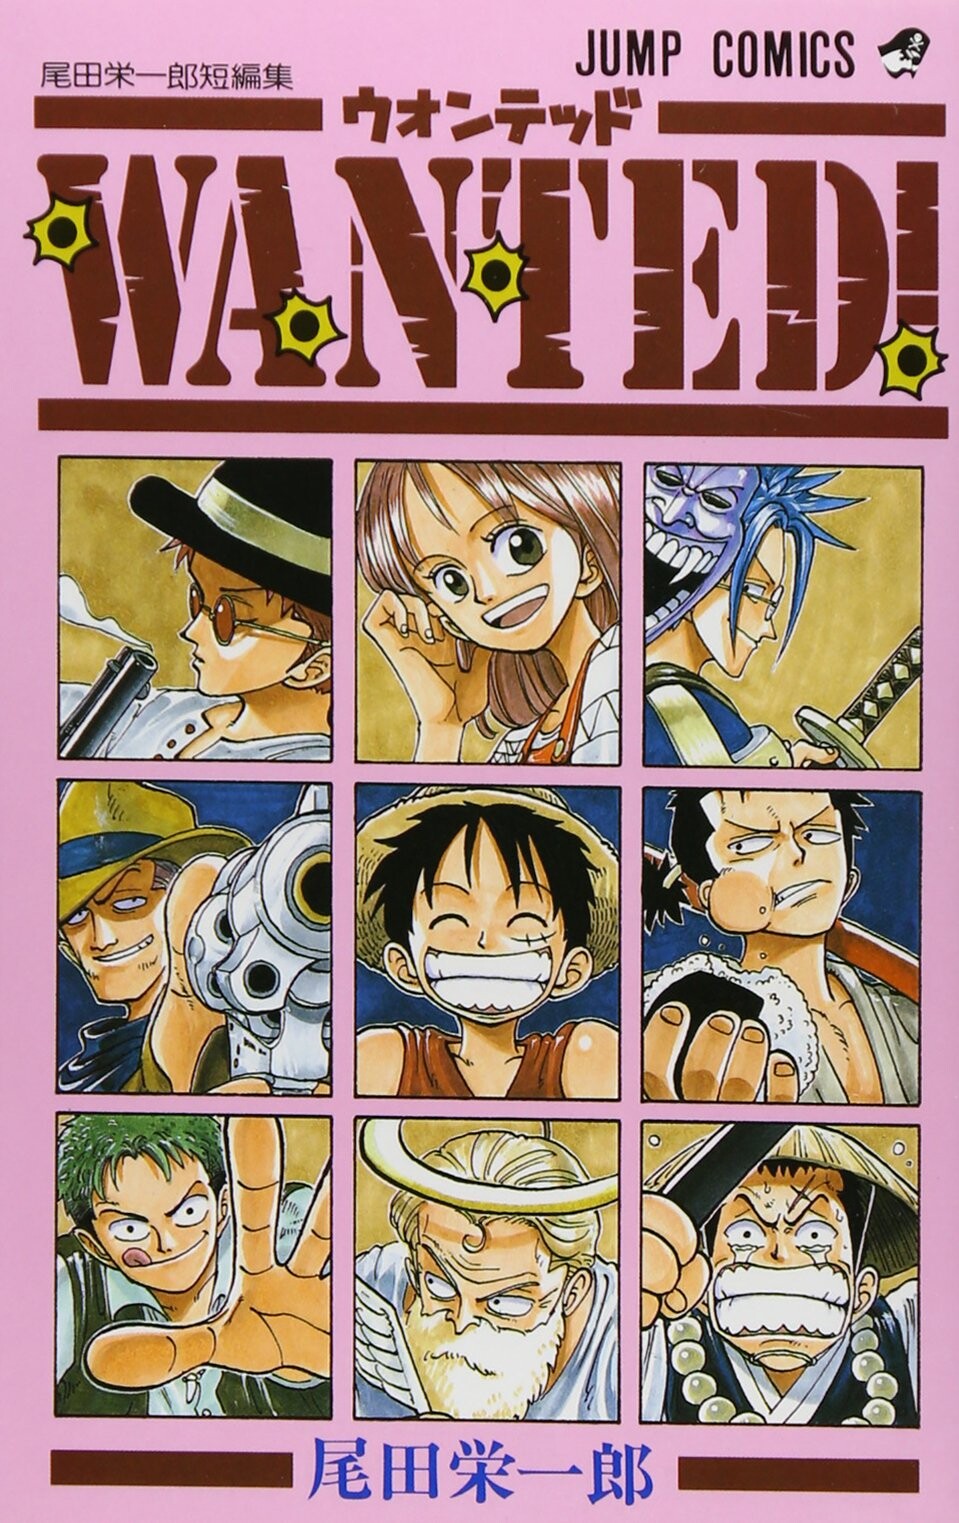 Der Vorgänger von One Piece wurde später in den Wanted-Büchern veröffentlicht.